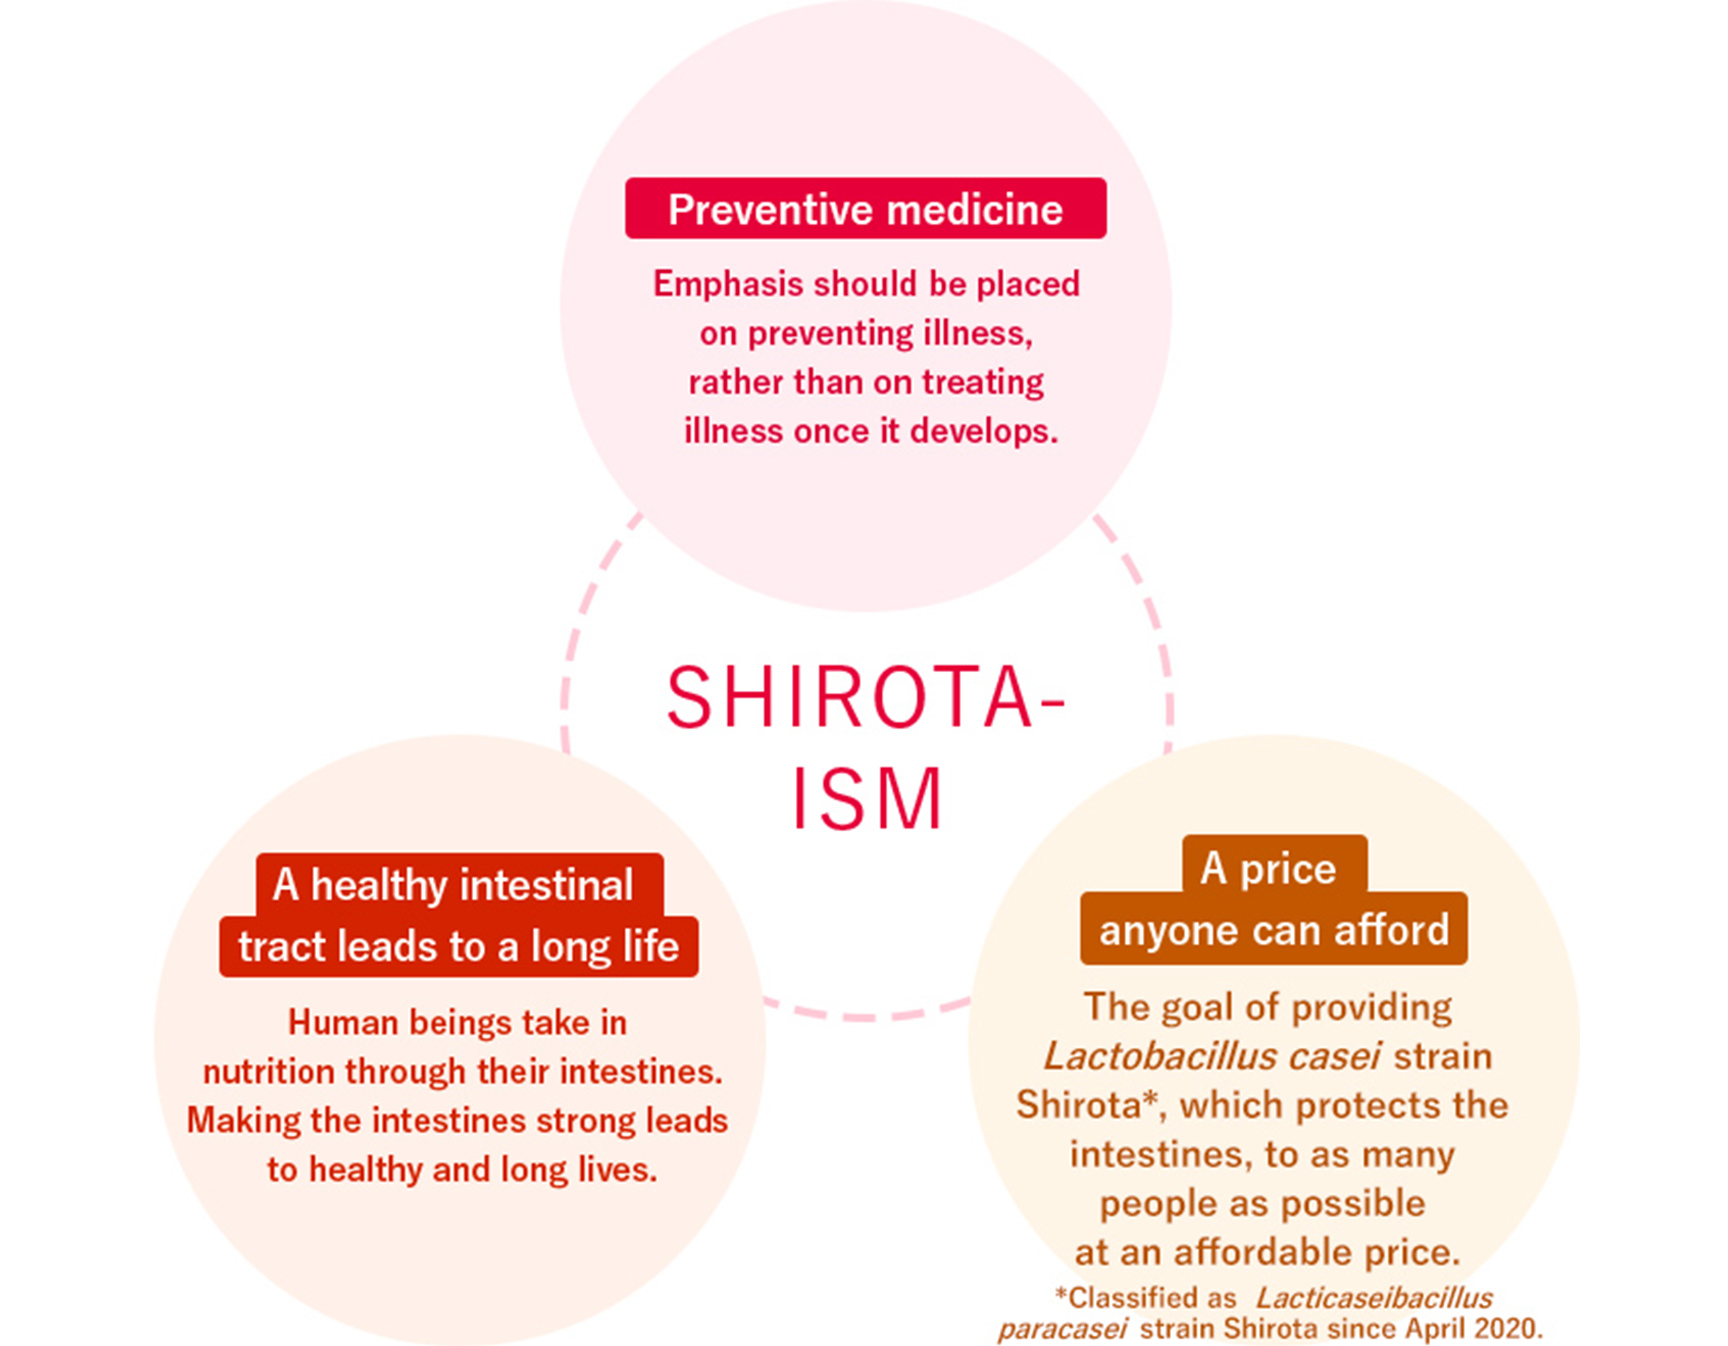 Shirota-ism